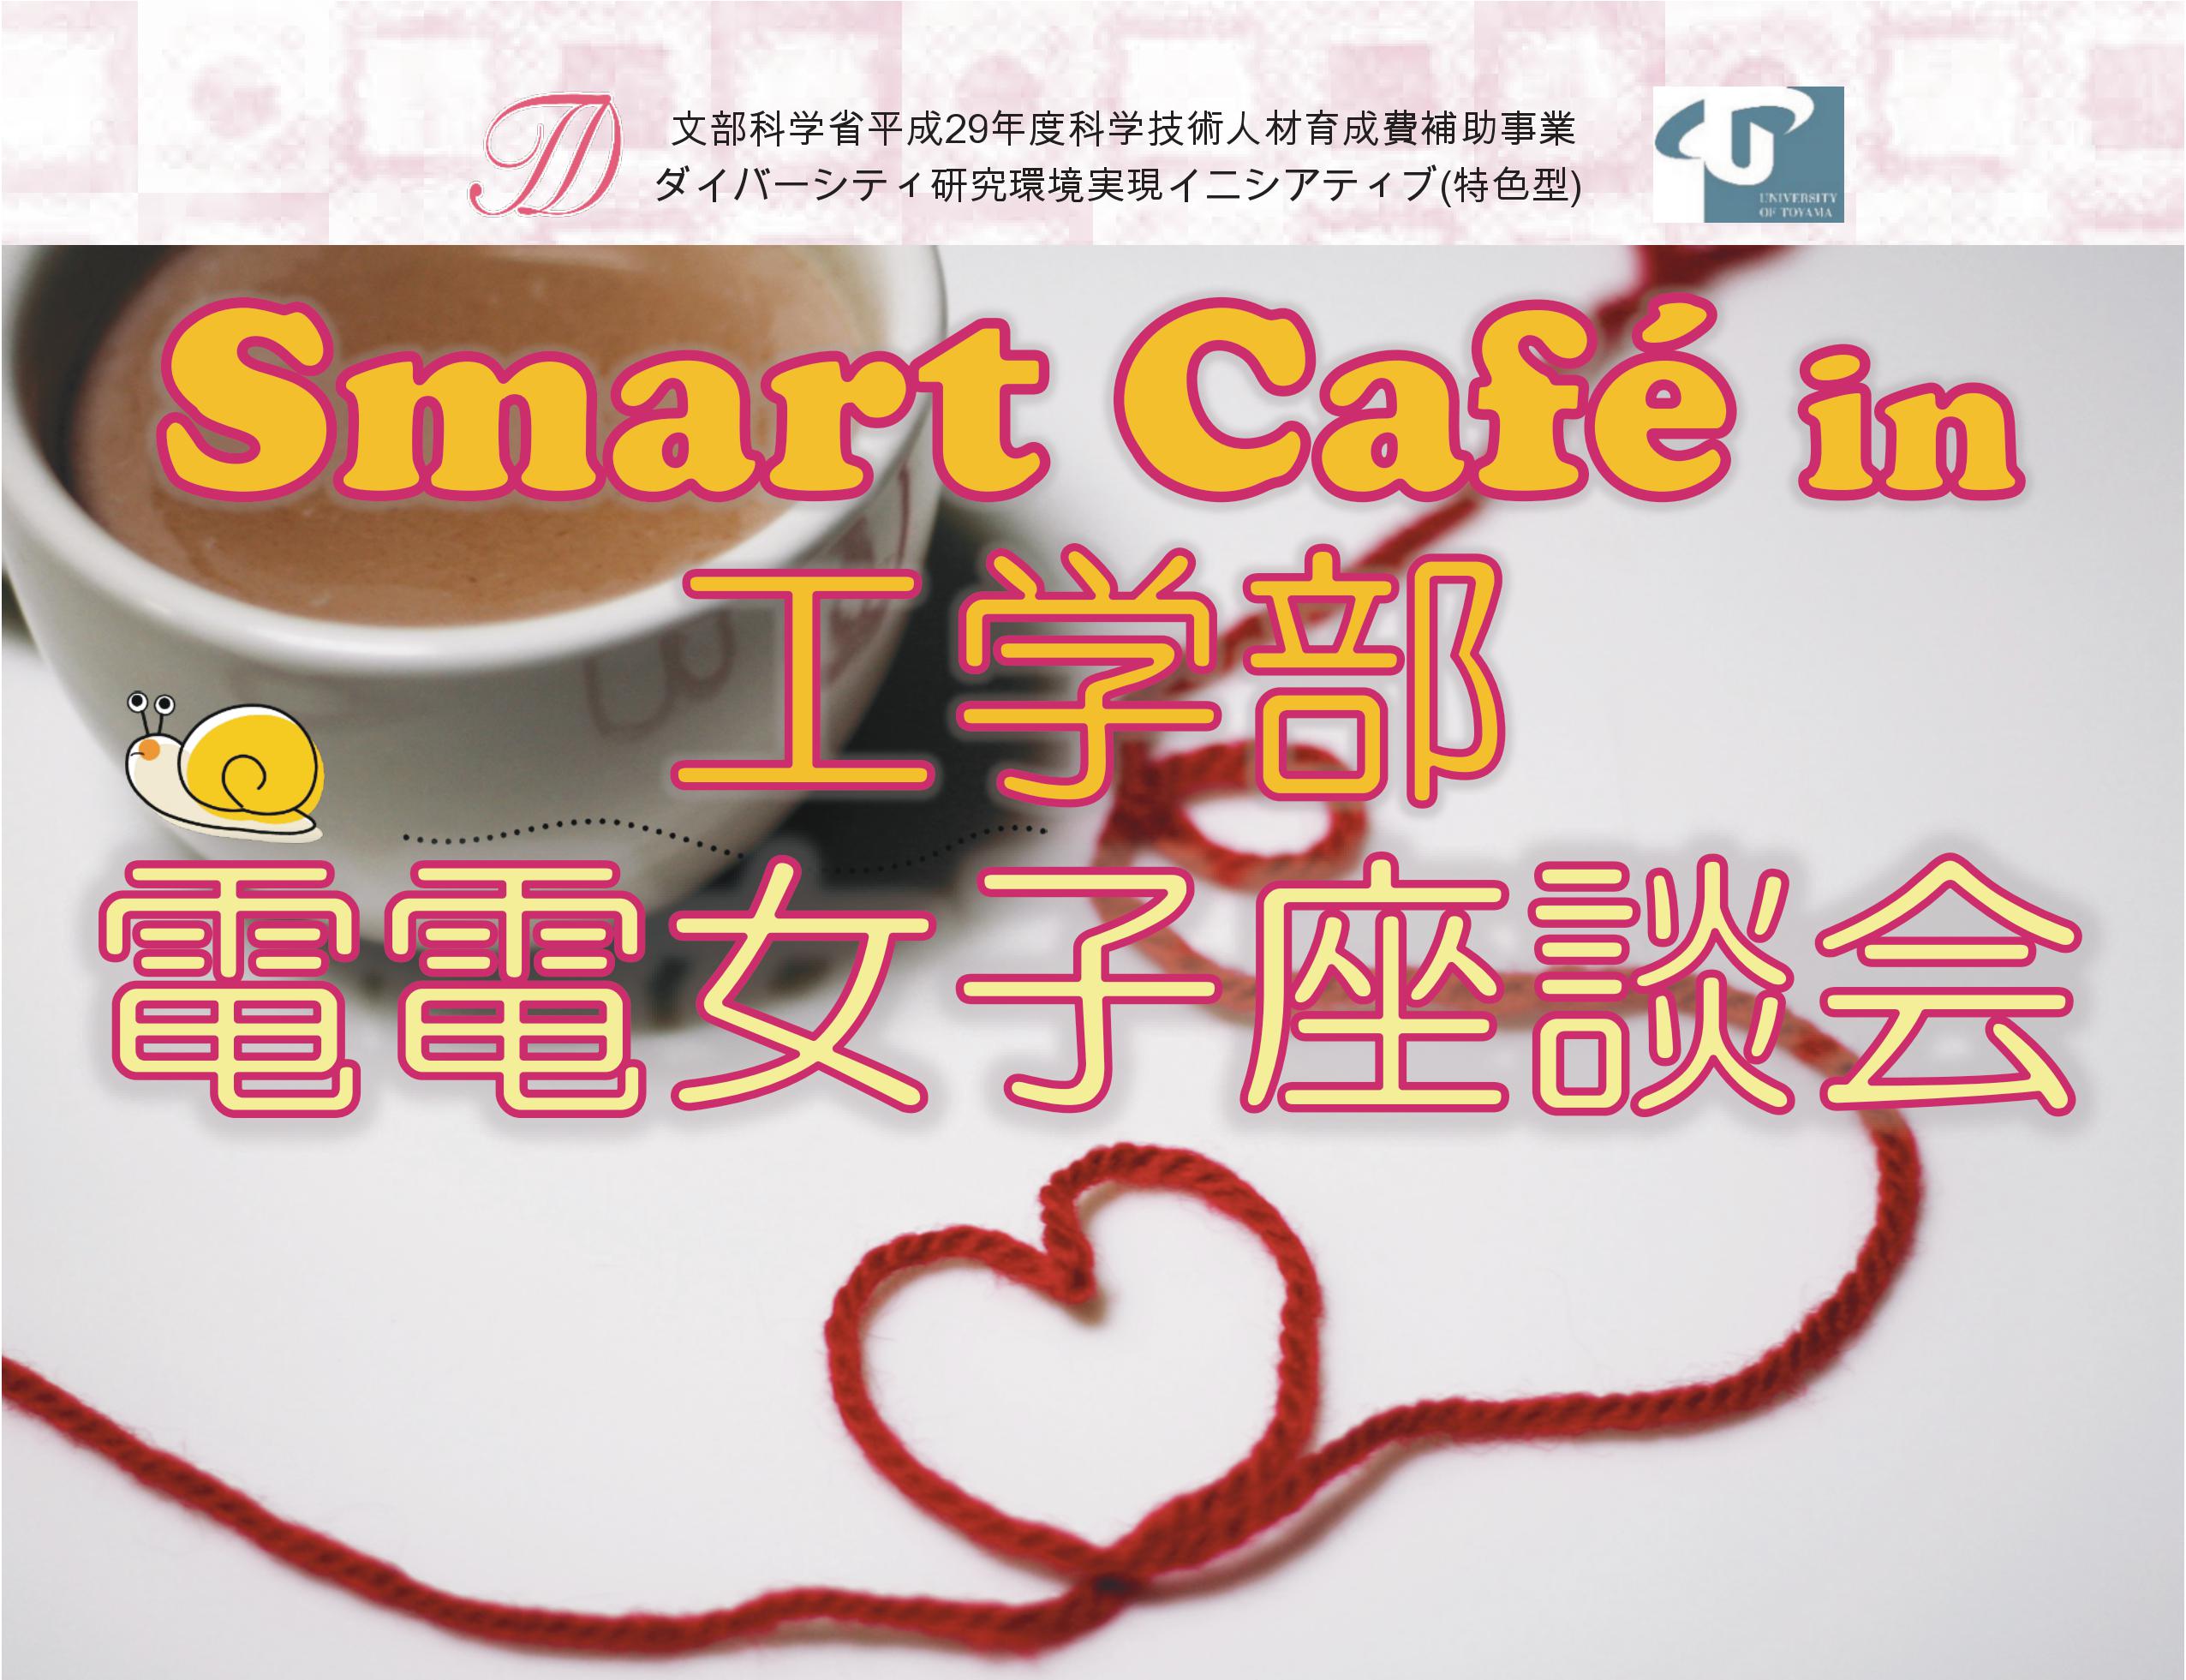 電気電子システム工学科の女子学生の集い「Smart Café in 工学部　電電女子座談会」が実施されました。